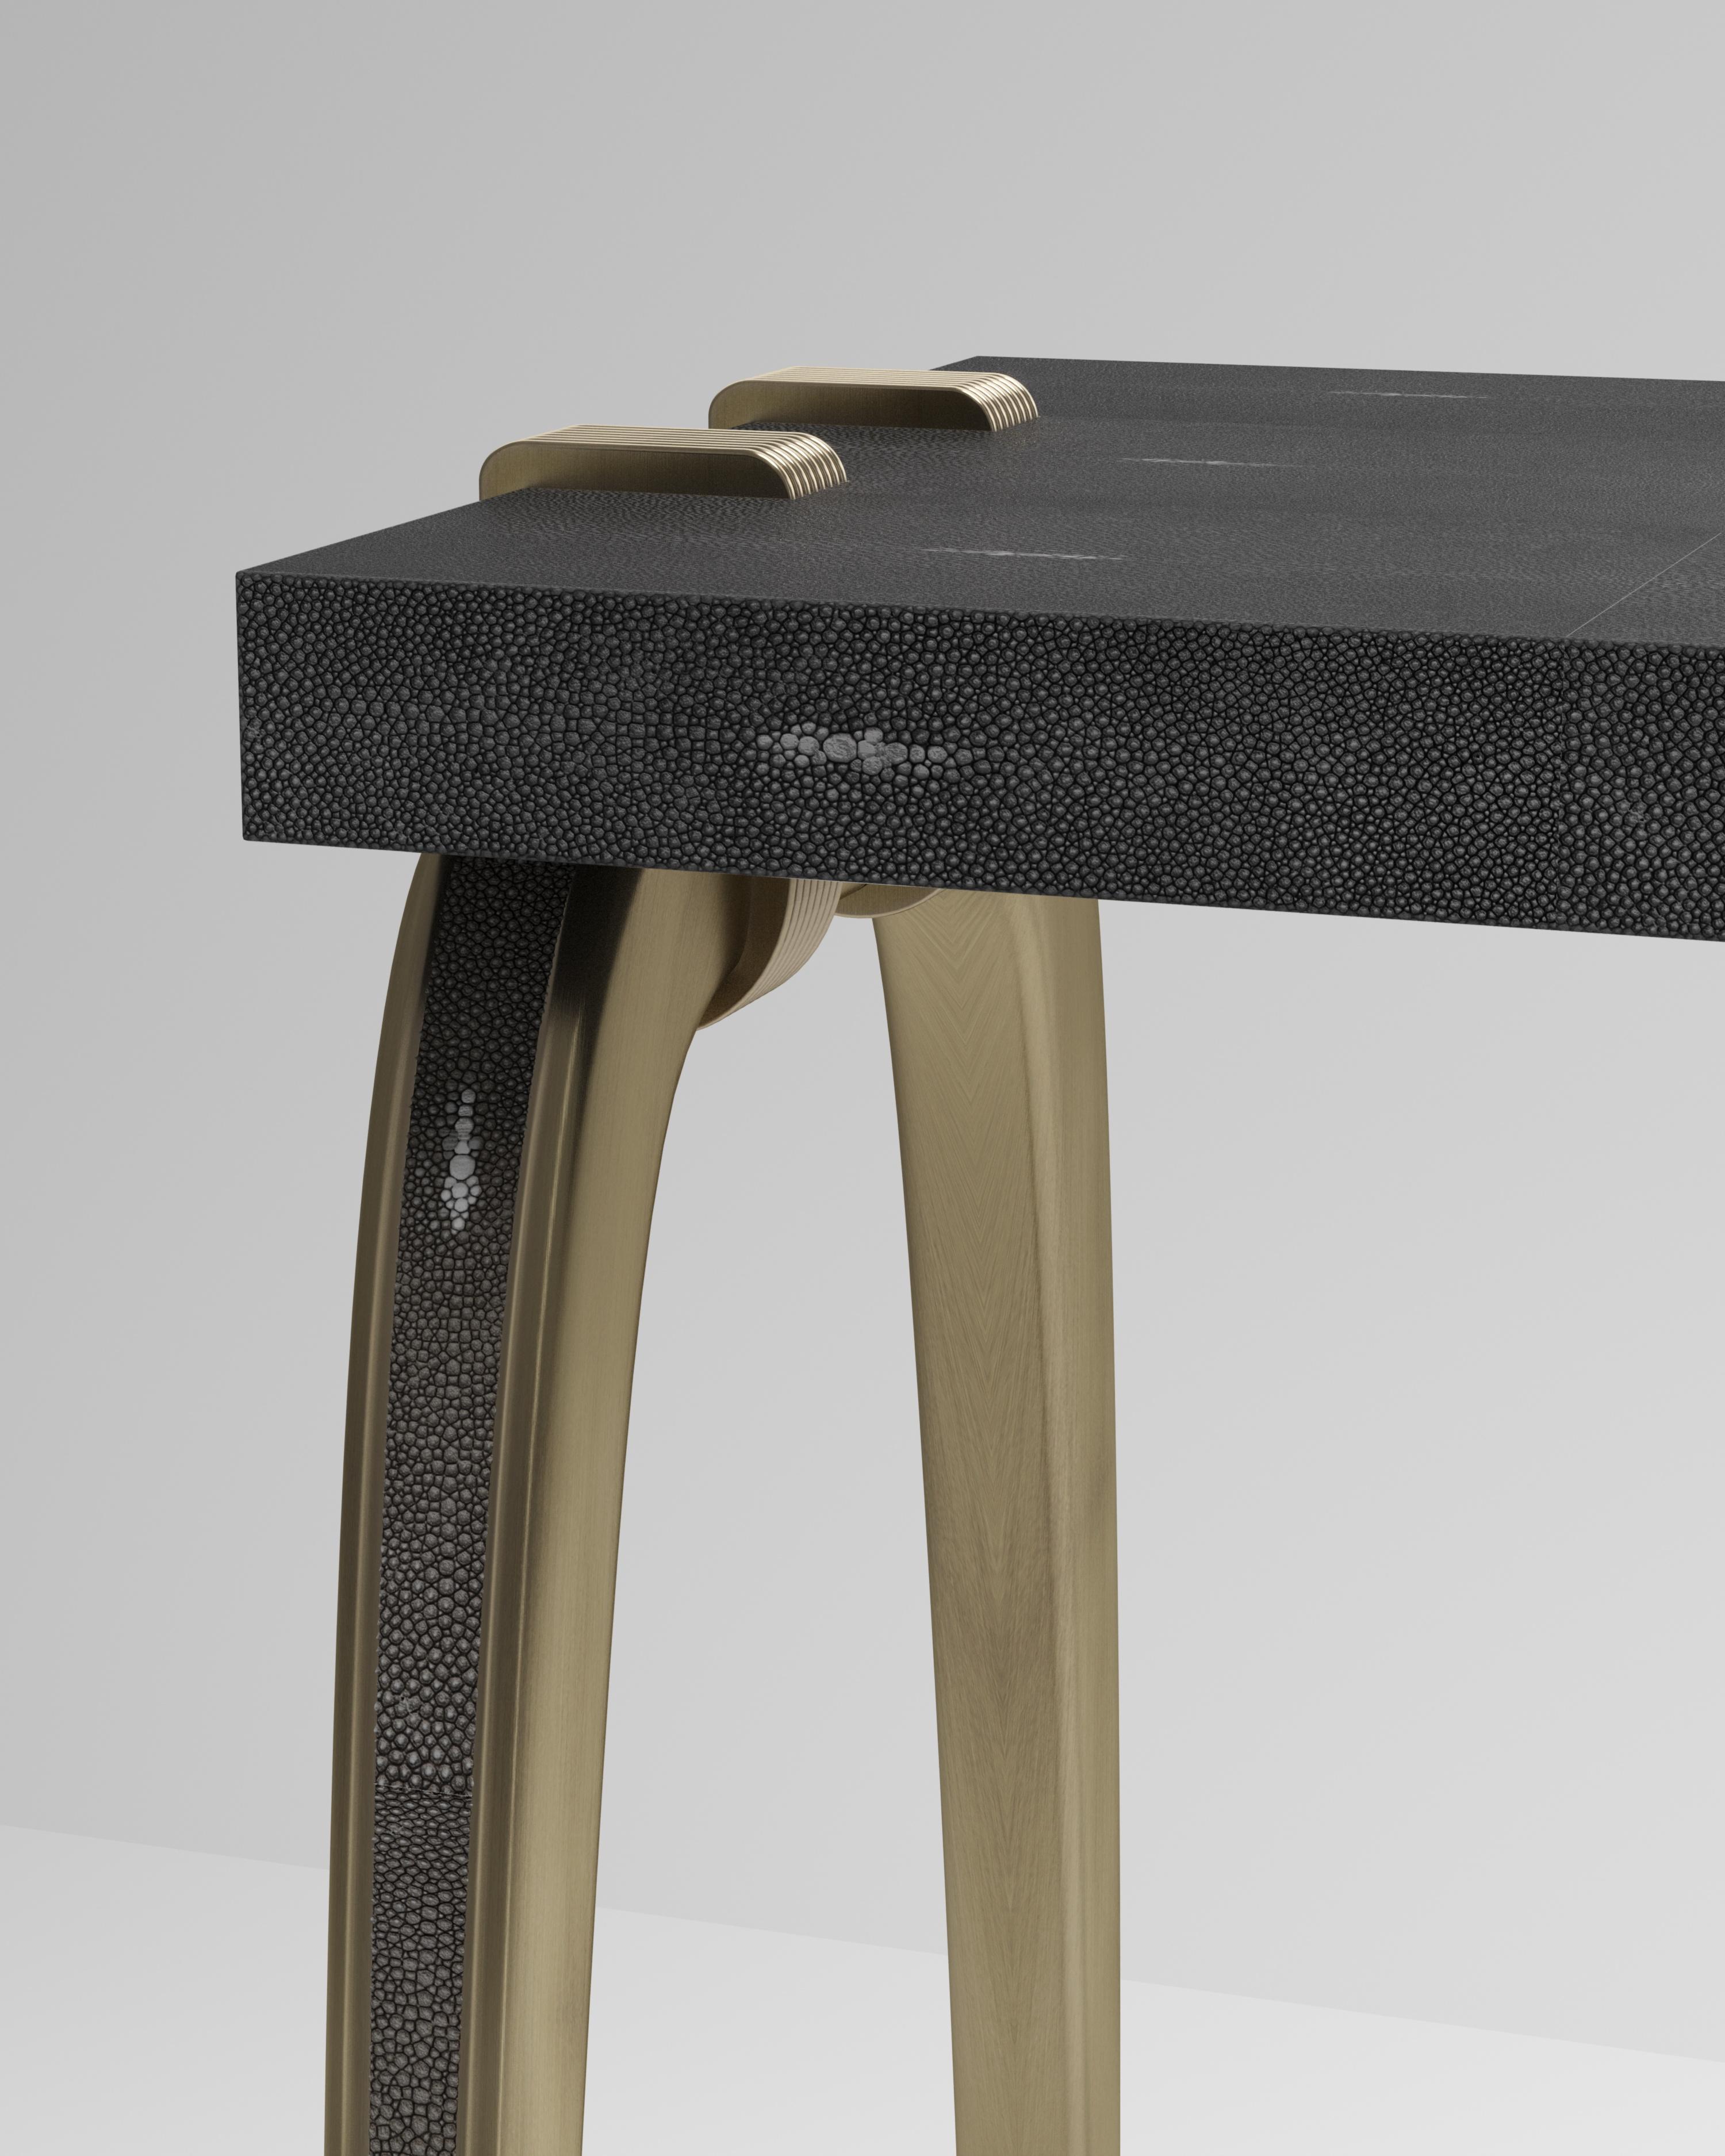 La table console Sonia est un modèle emblématique d'Augousti, qui met en valeur le savoir-faire exquis de la marque. Les pieds incrustés de galuchat s'accrochent sur le côté du plateau rectangulaire en galuchat noir. Cette pièce est un clin d'œil à